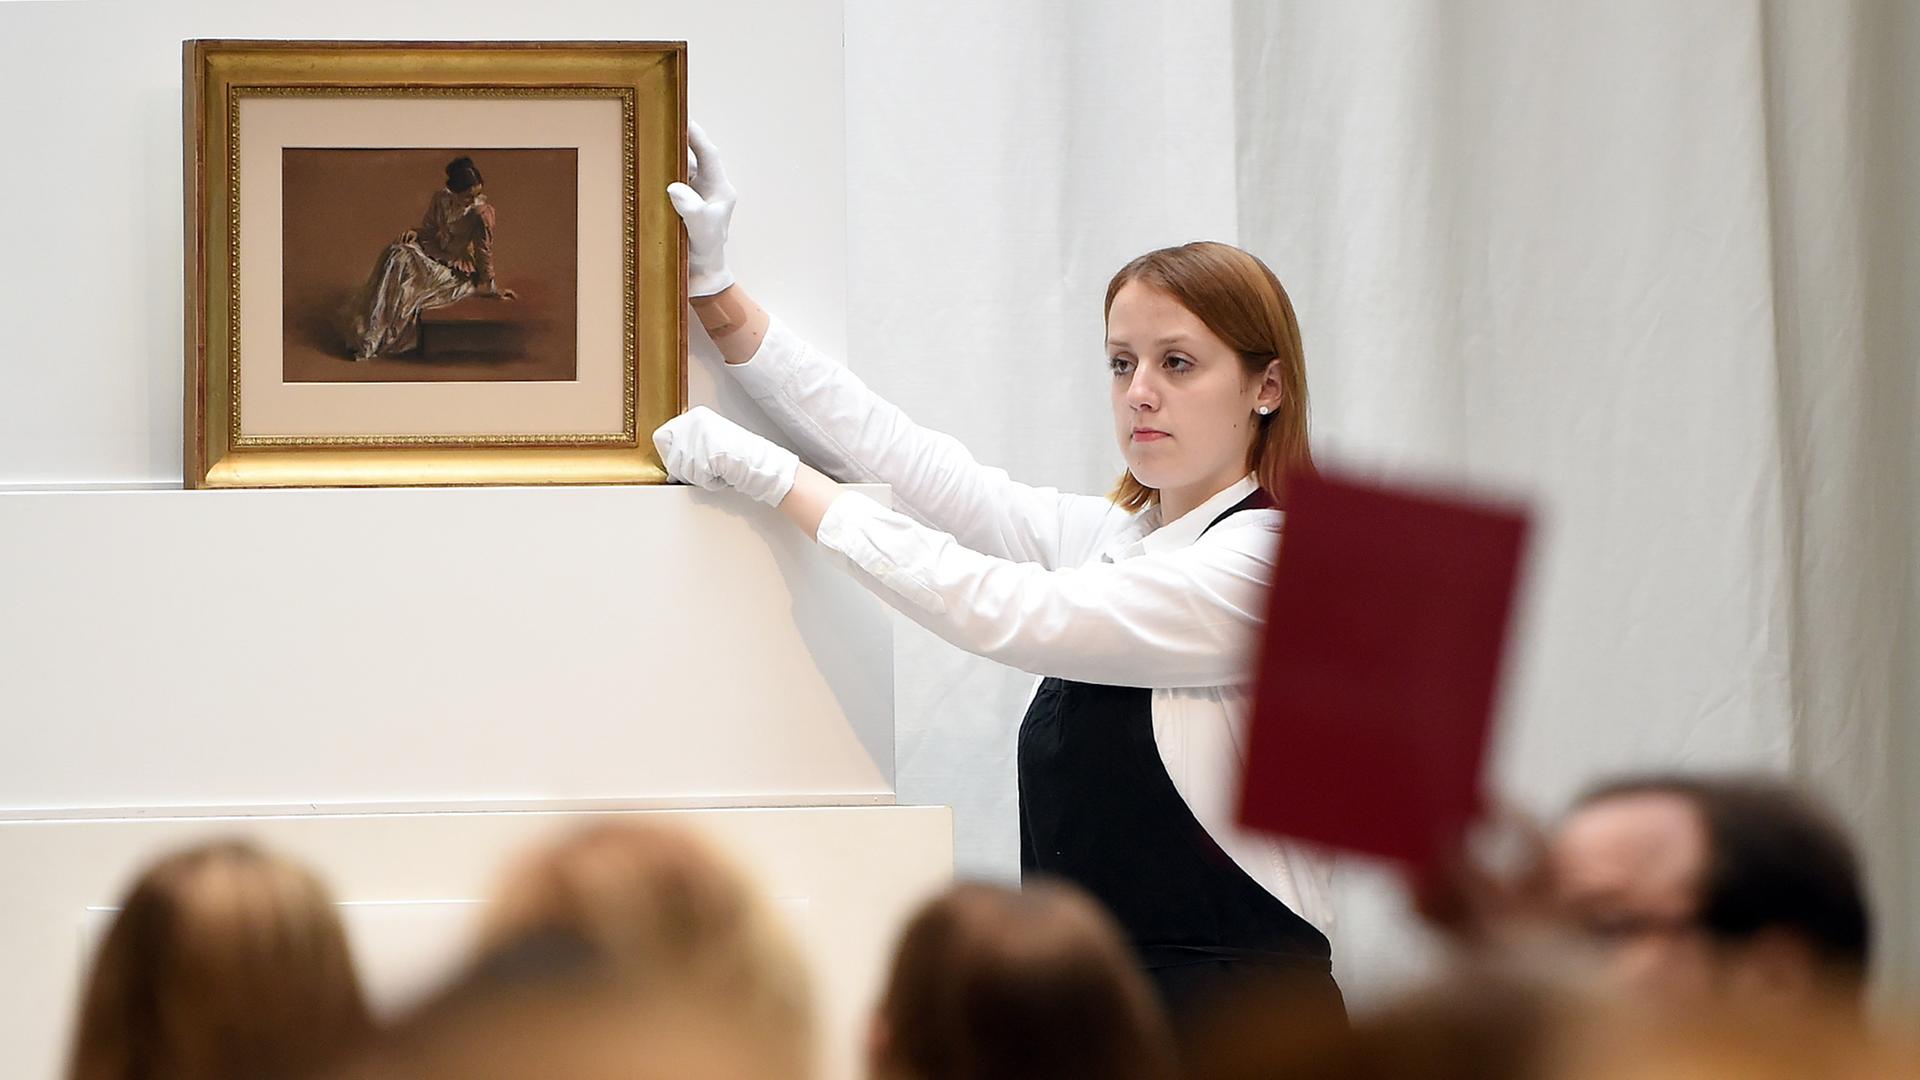 Eine Mitarbeiterin der Villa Grisebach präsentiert in Berlin bei einer Auktion das Werk "Emilie in roter Bluse" von Adolph Menzel. 